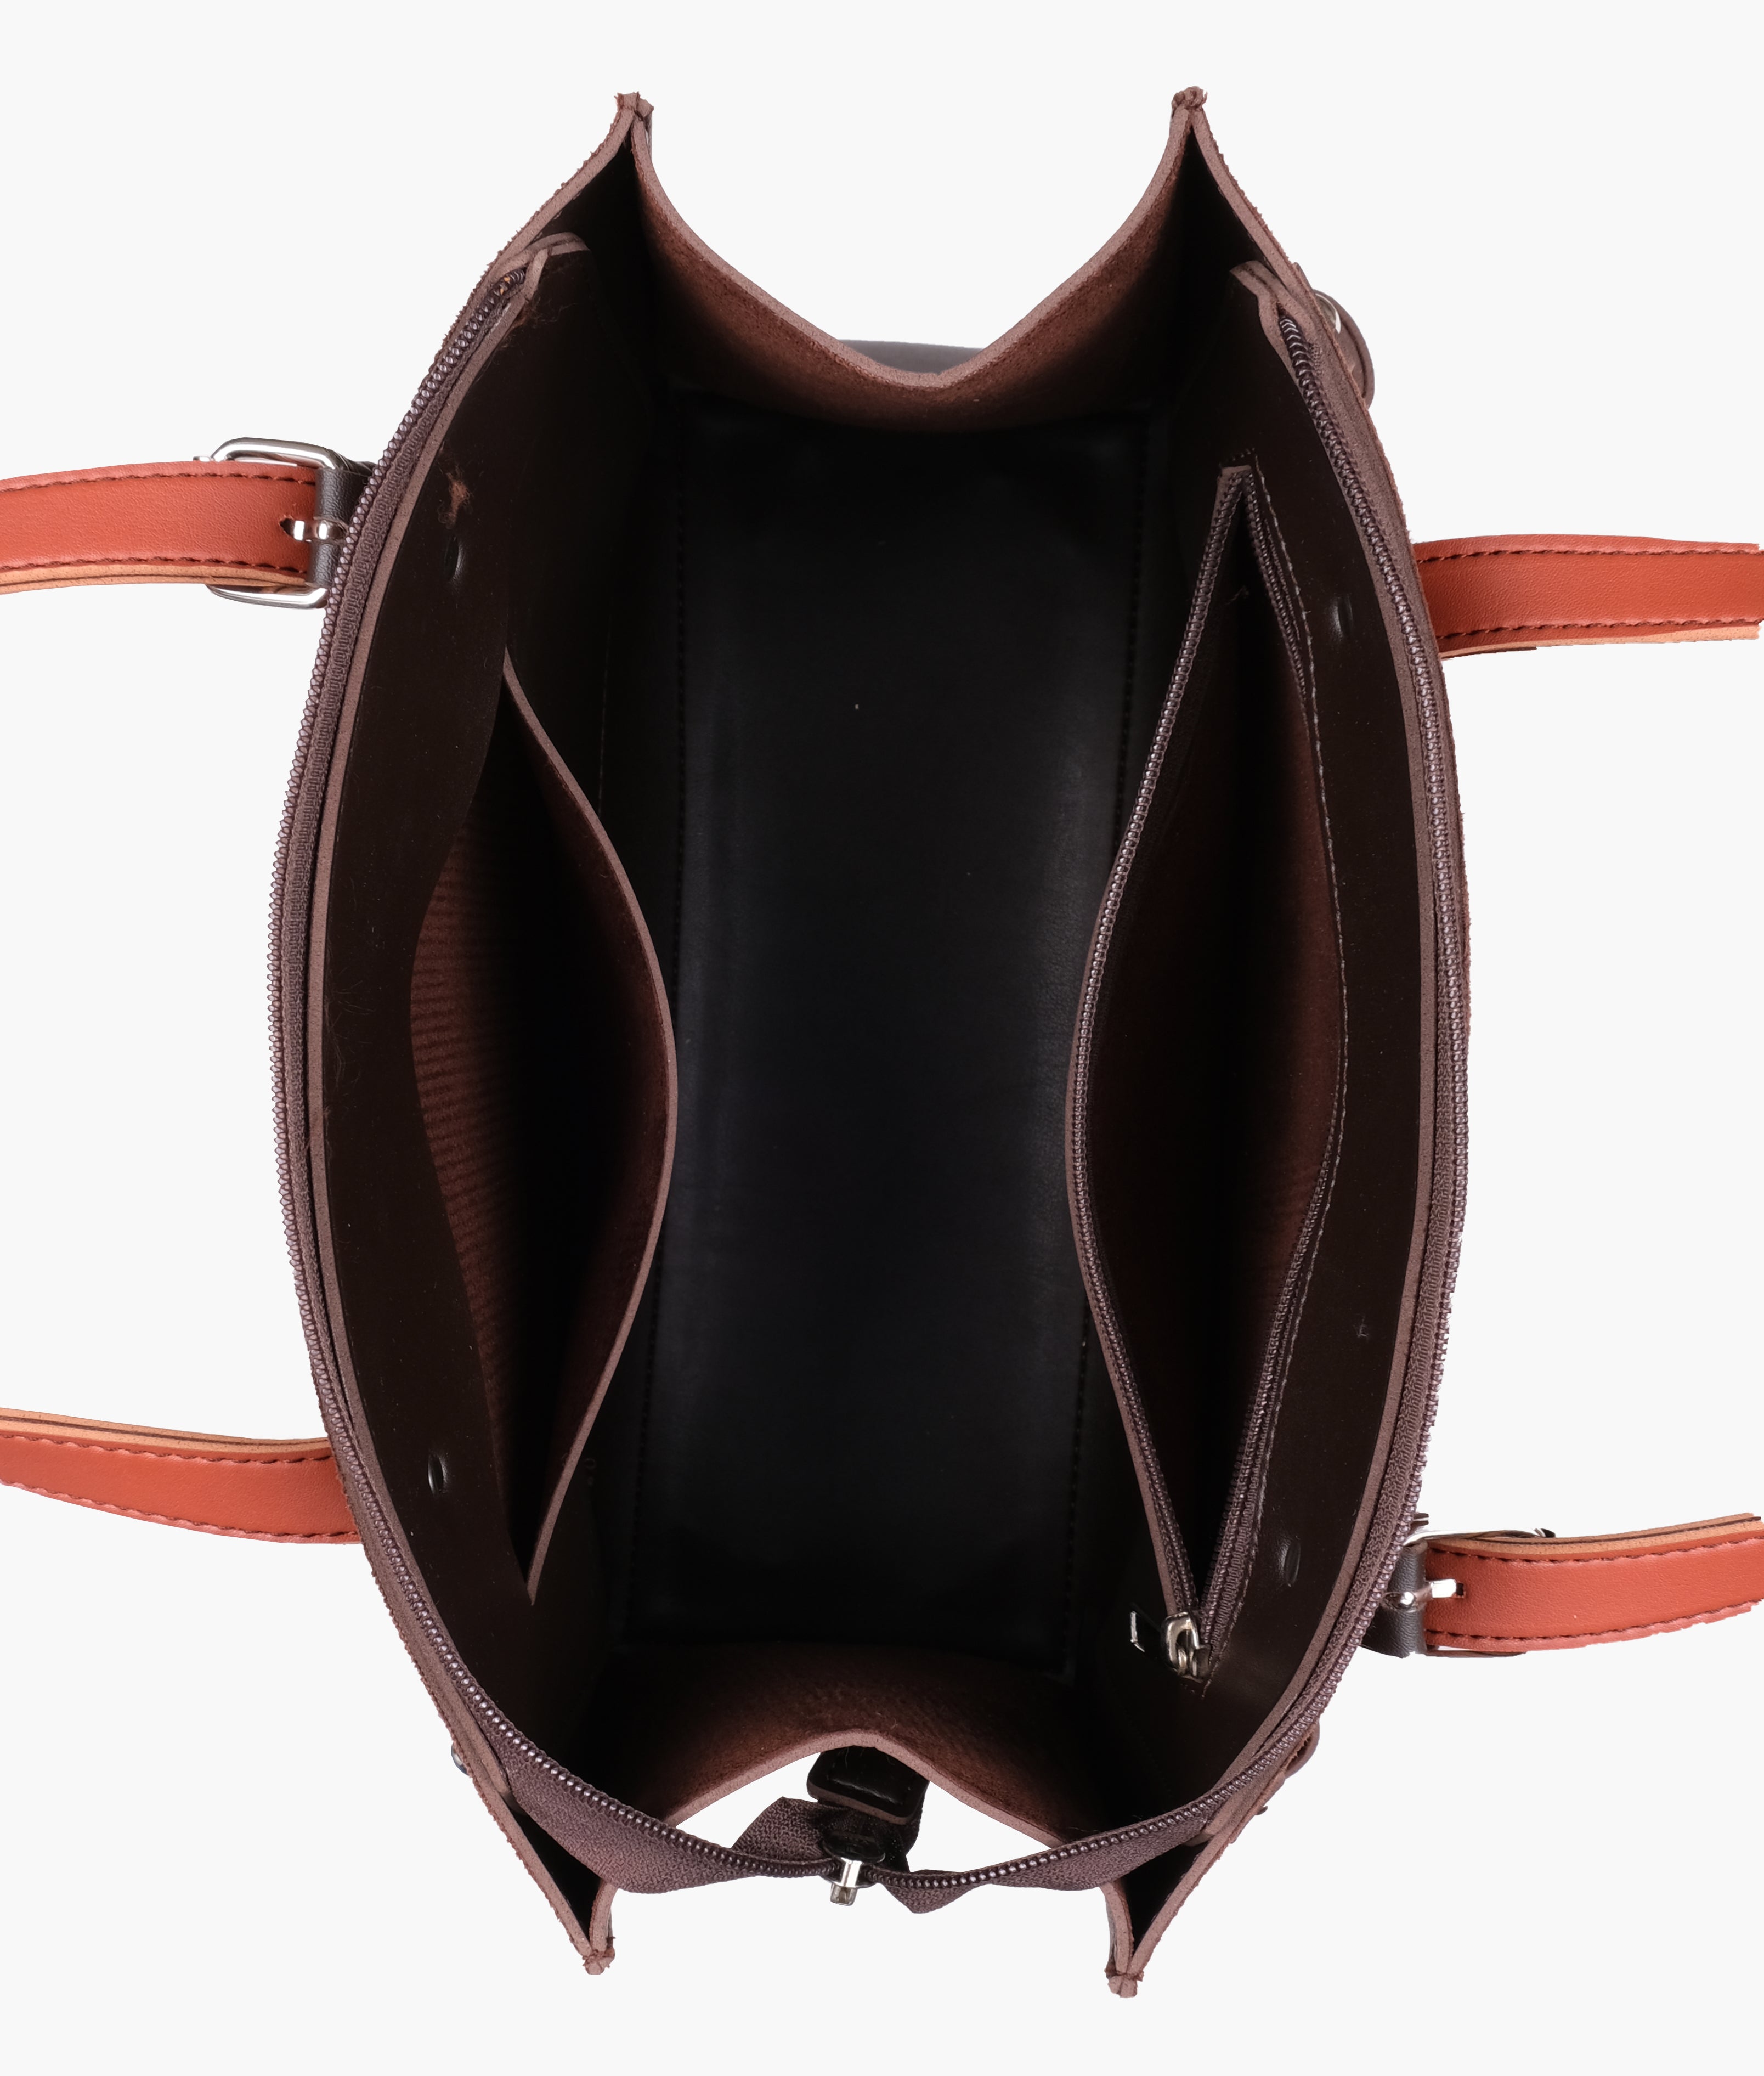 Dark brown suede satchel tote bag